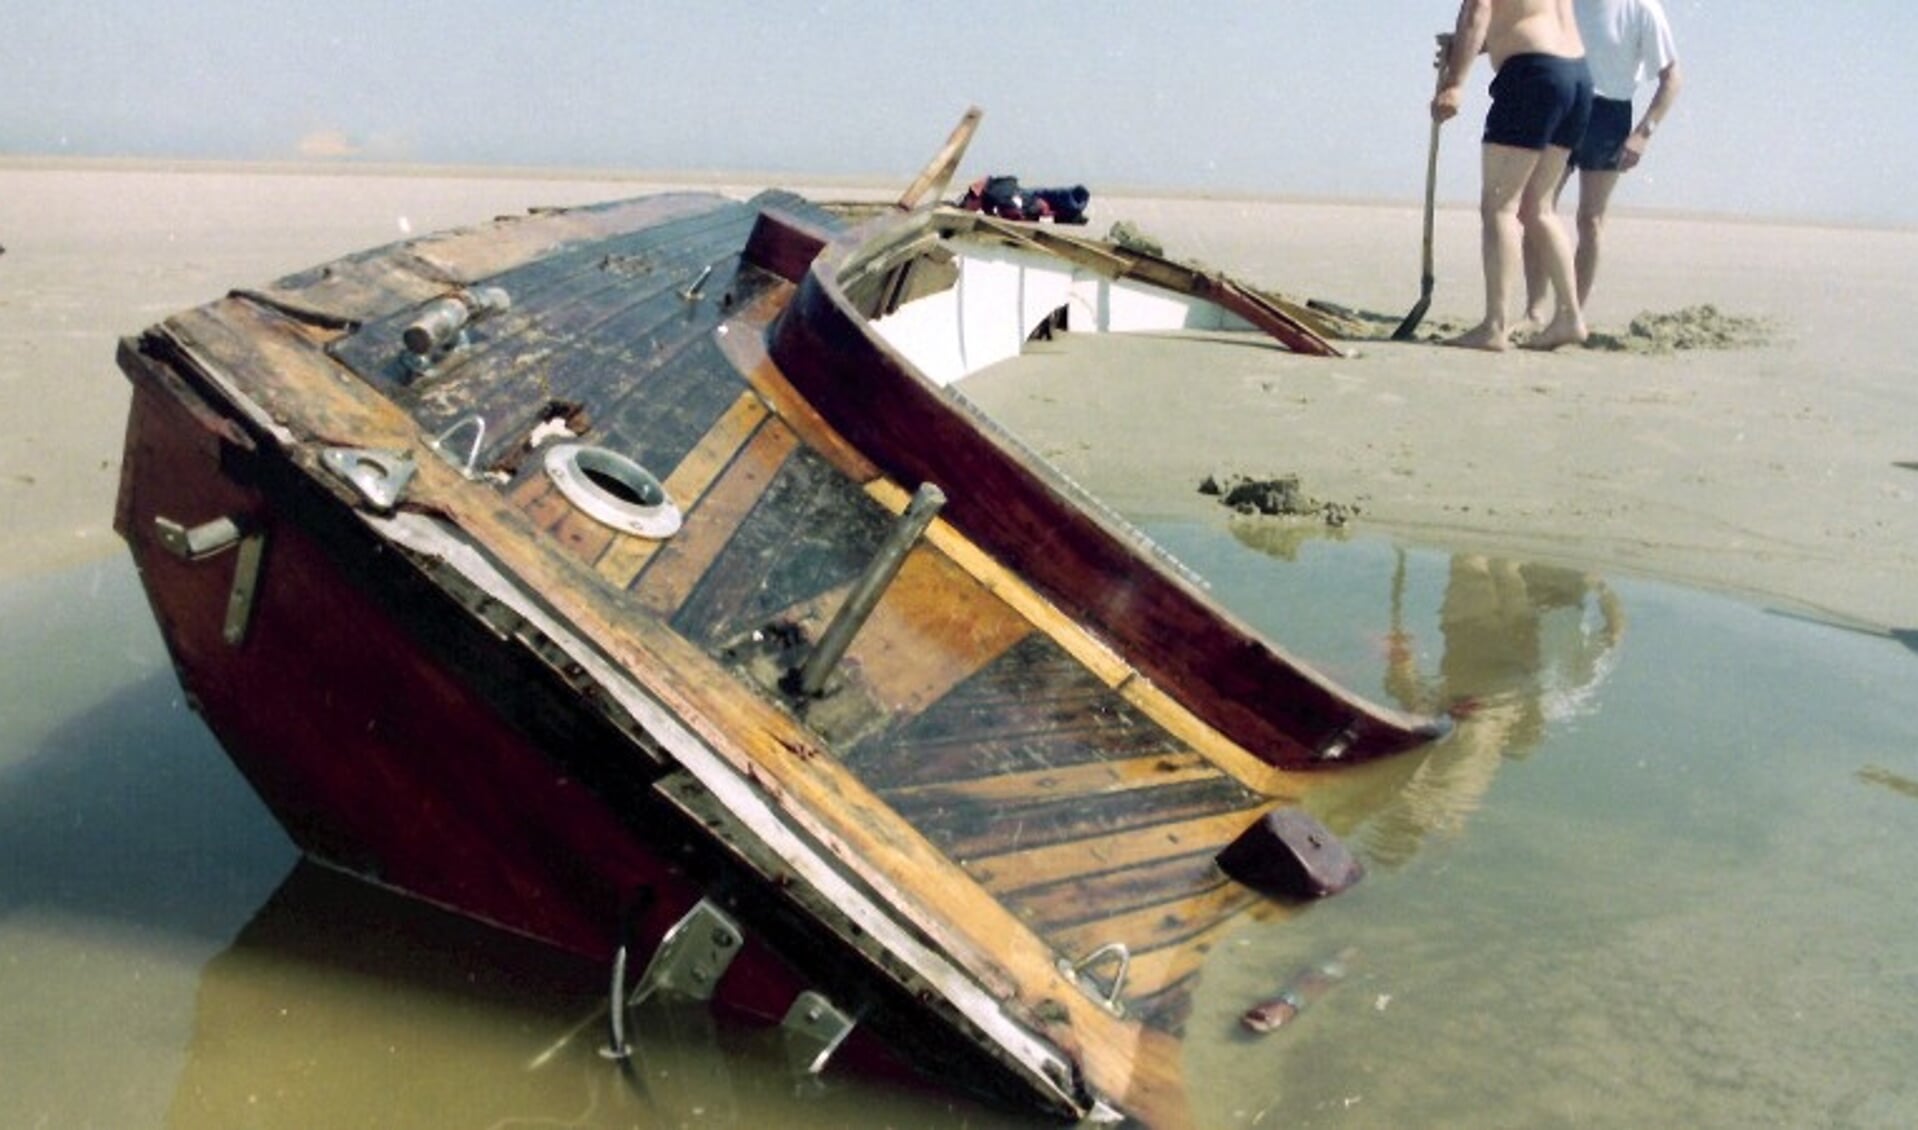 Het wrak van de zeilboot die in juni 1995 aanspoelde op de Razende Bol.  